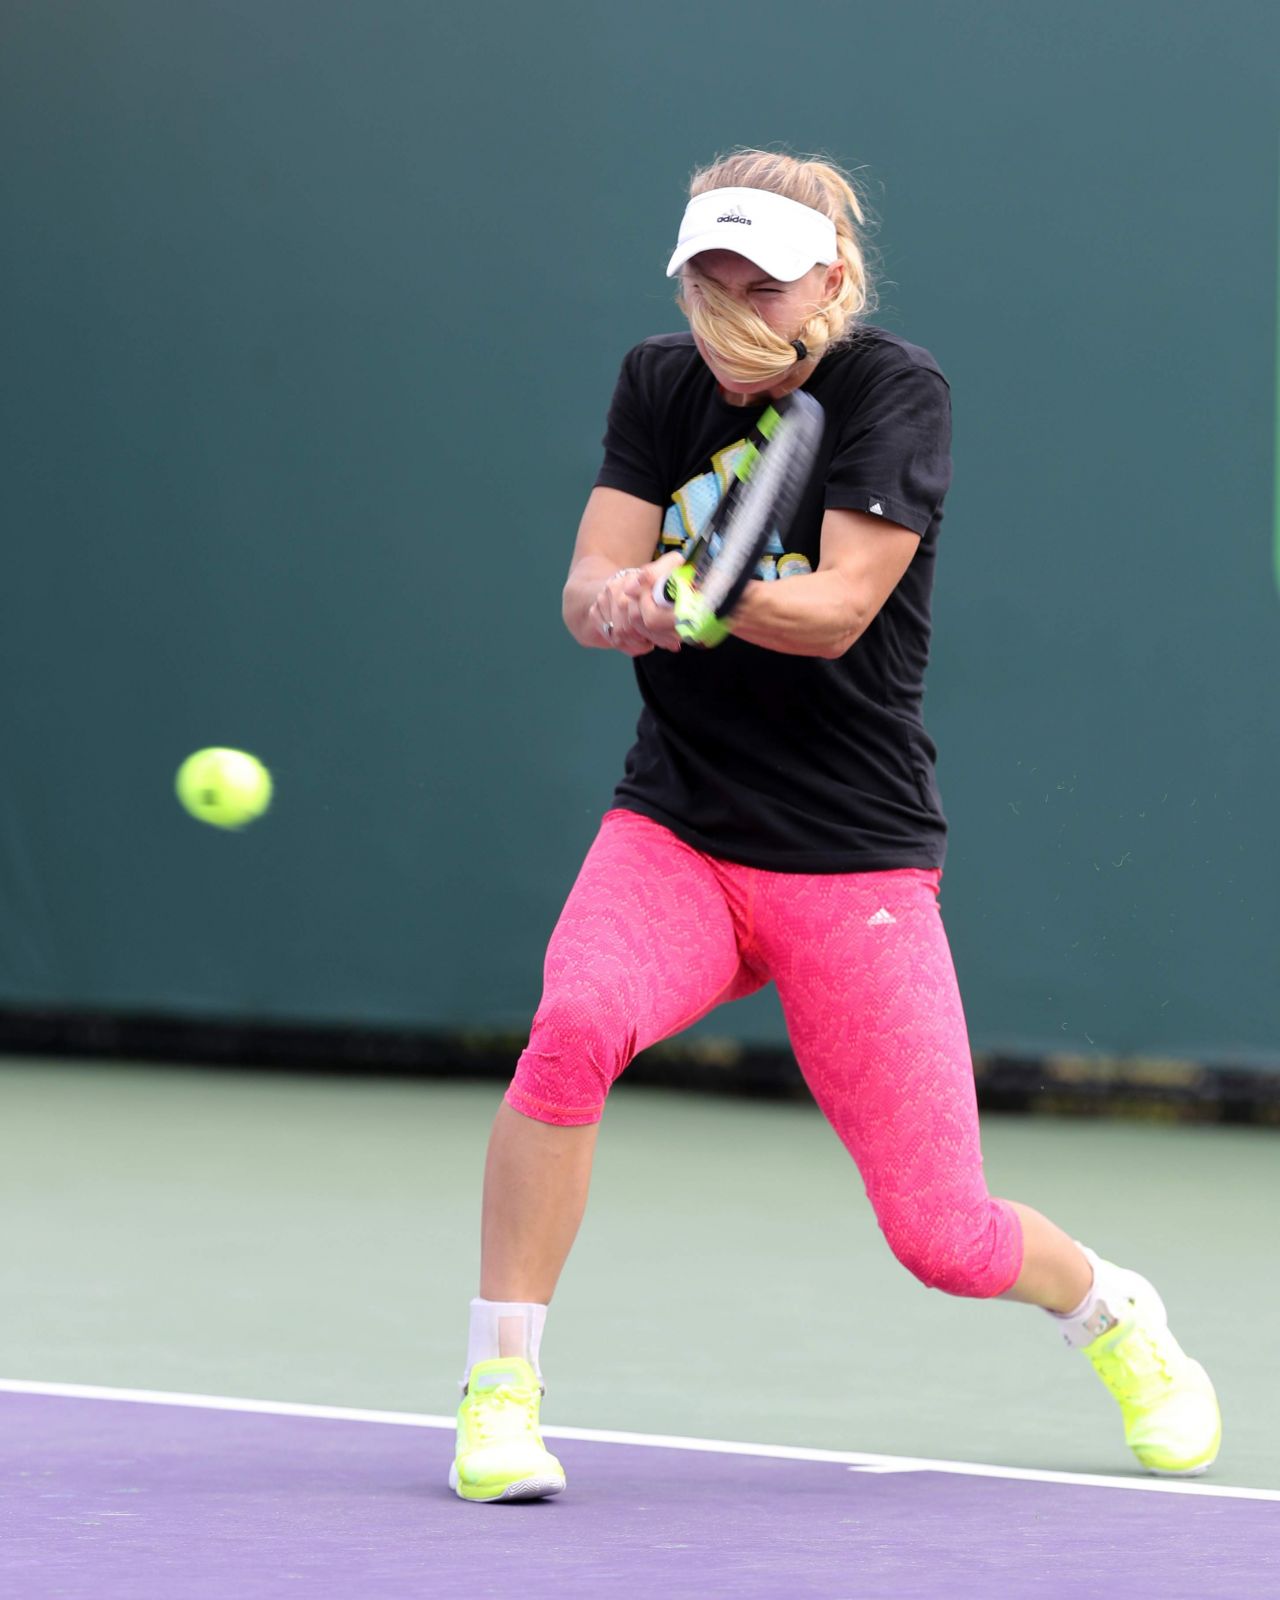 Caroline Wozniacki On The Practice Court - Miami Open in Key Biscayne 3/23/ 20171280 x 1600